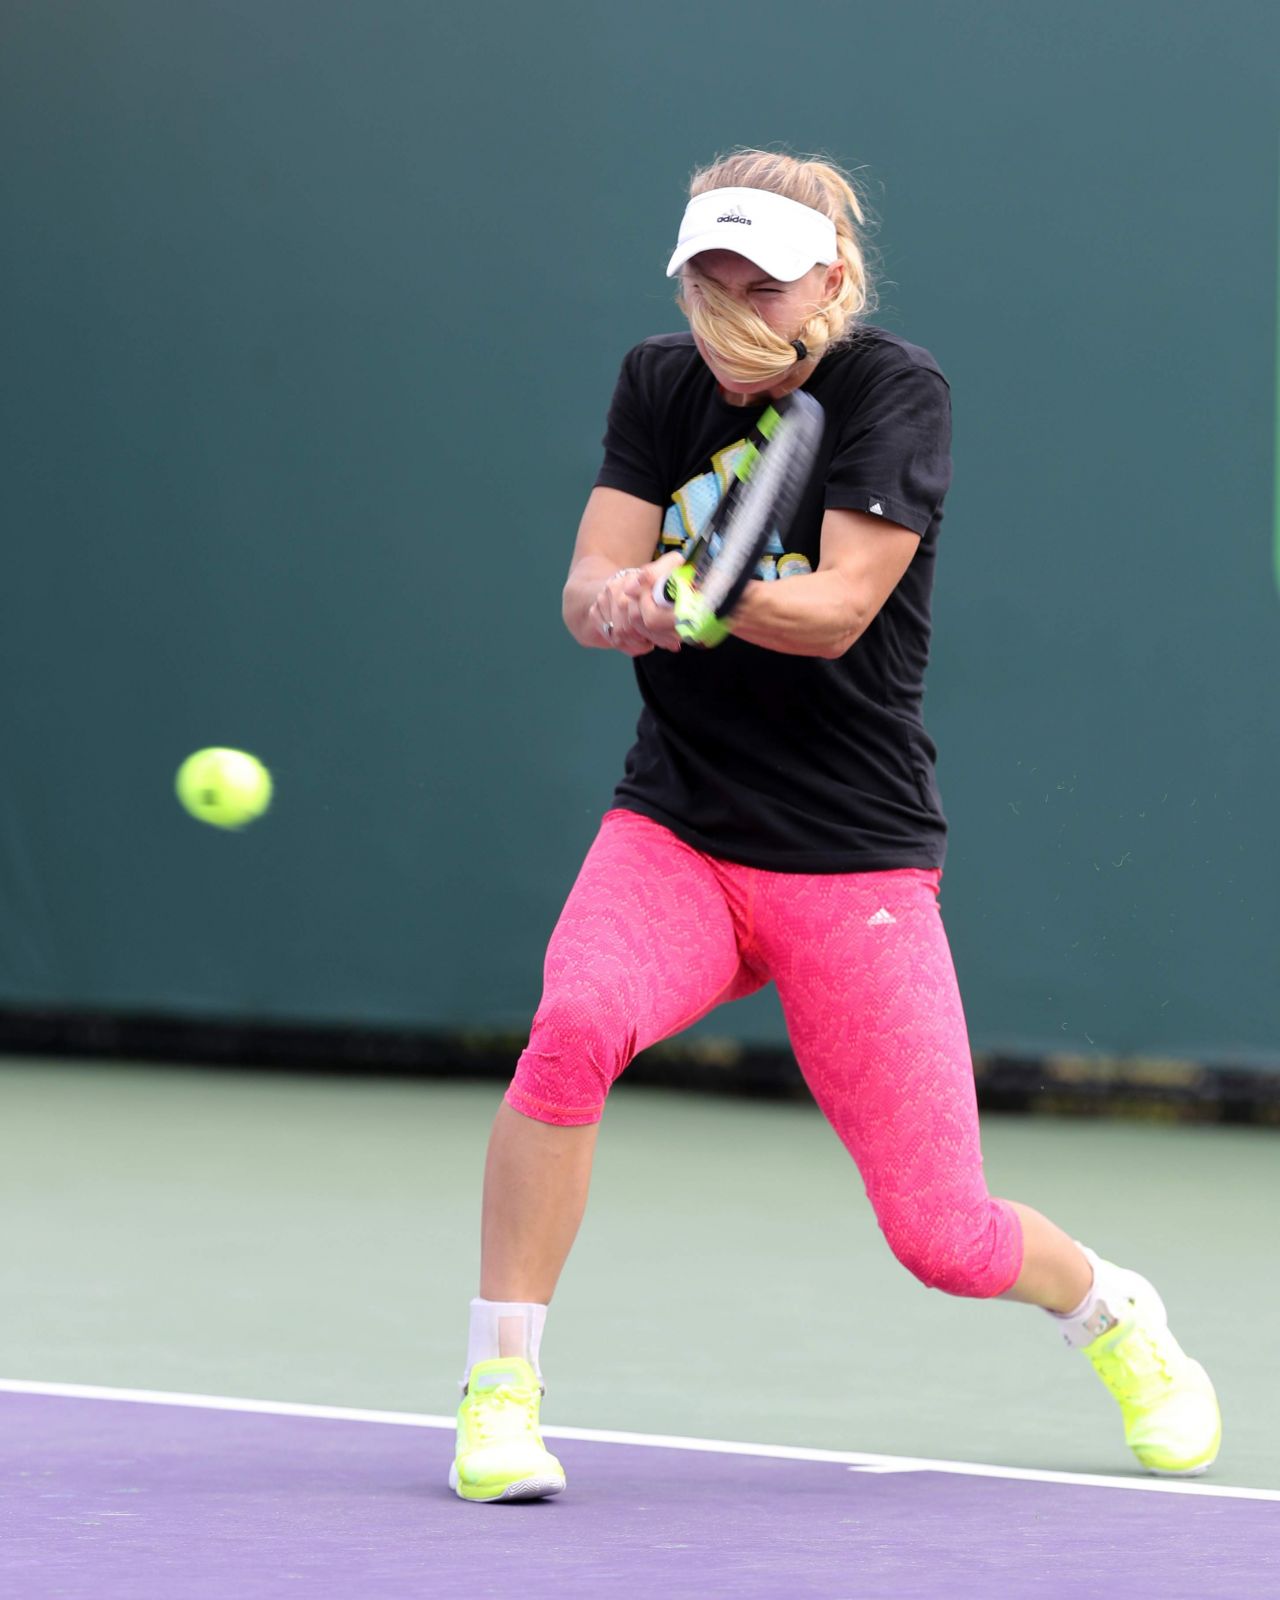 Caroline Wozniacki On The Practice Court - Miami Open in Key Biscayne 3/23/ 20171280 x 1600